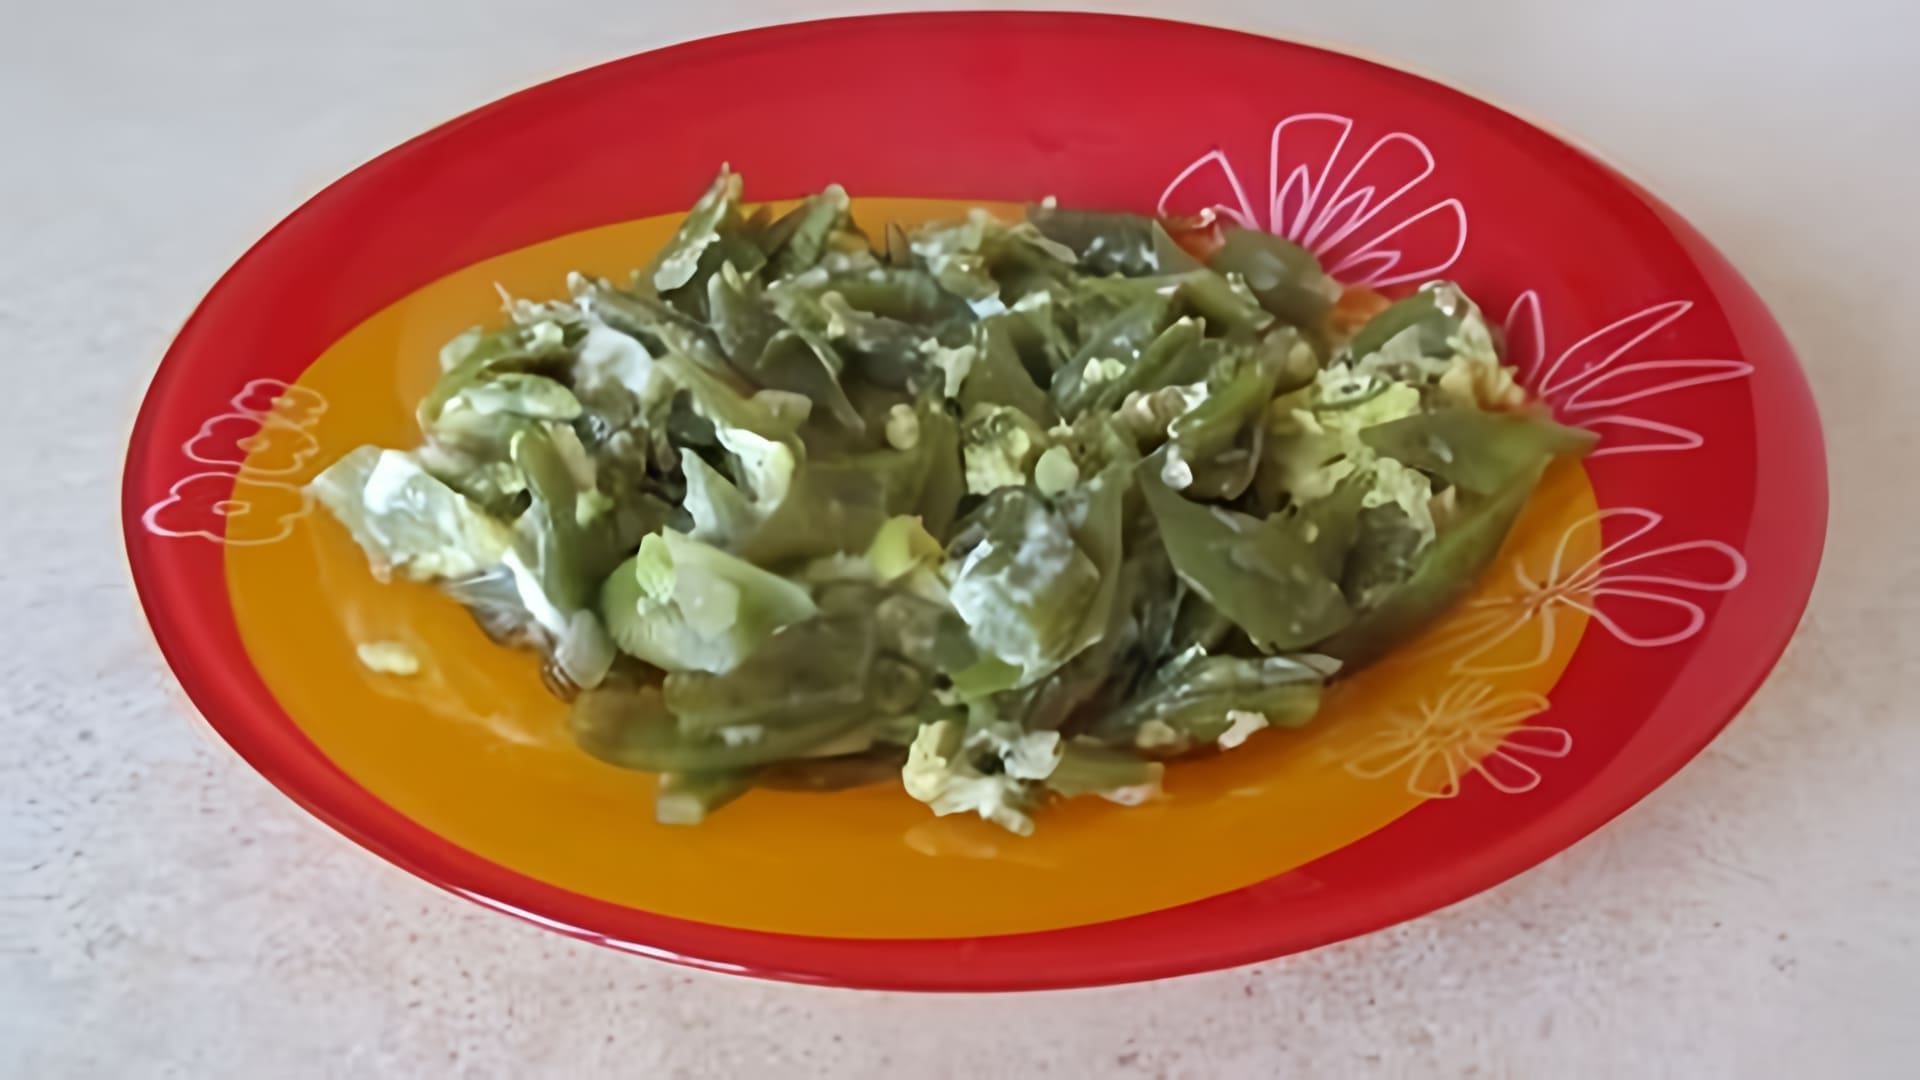 В этом видео демонстрируется рецепт приготовления тушеной зеленой фасоли